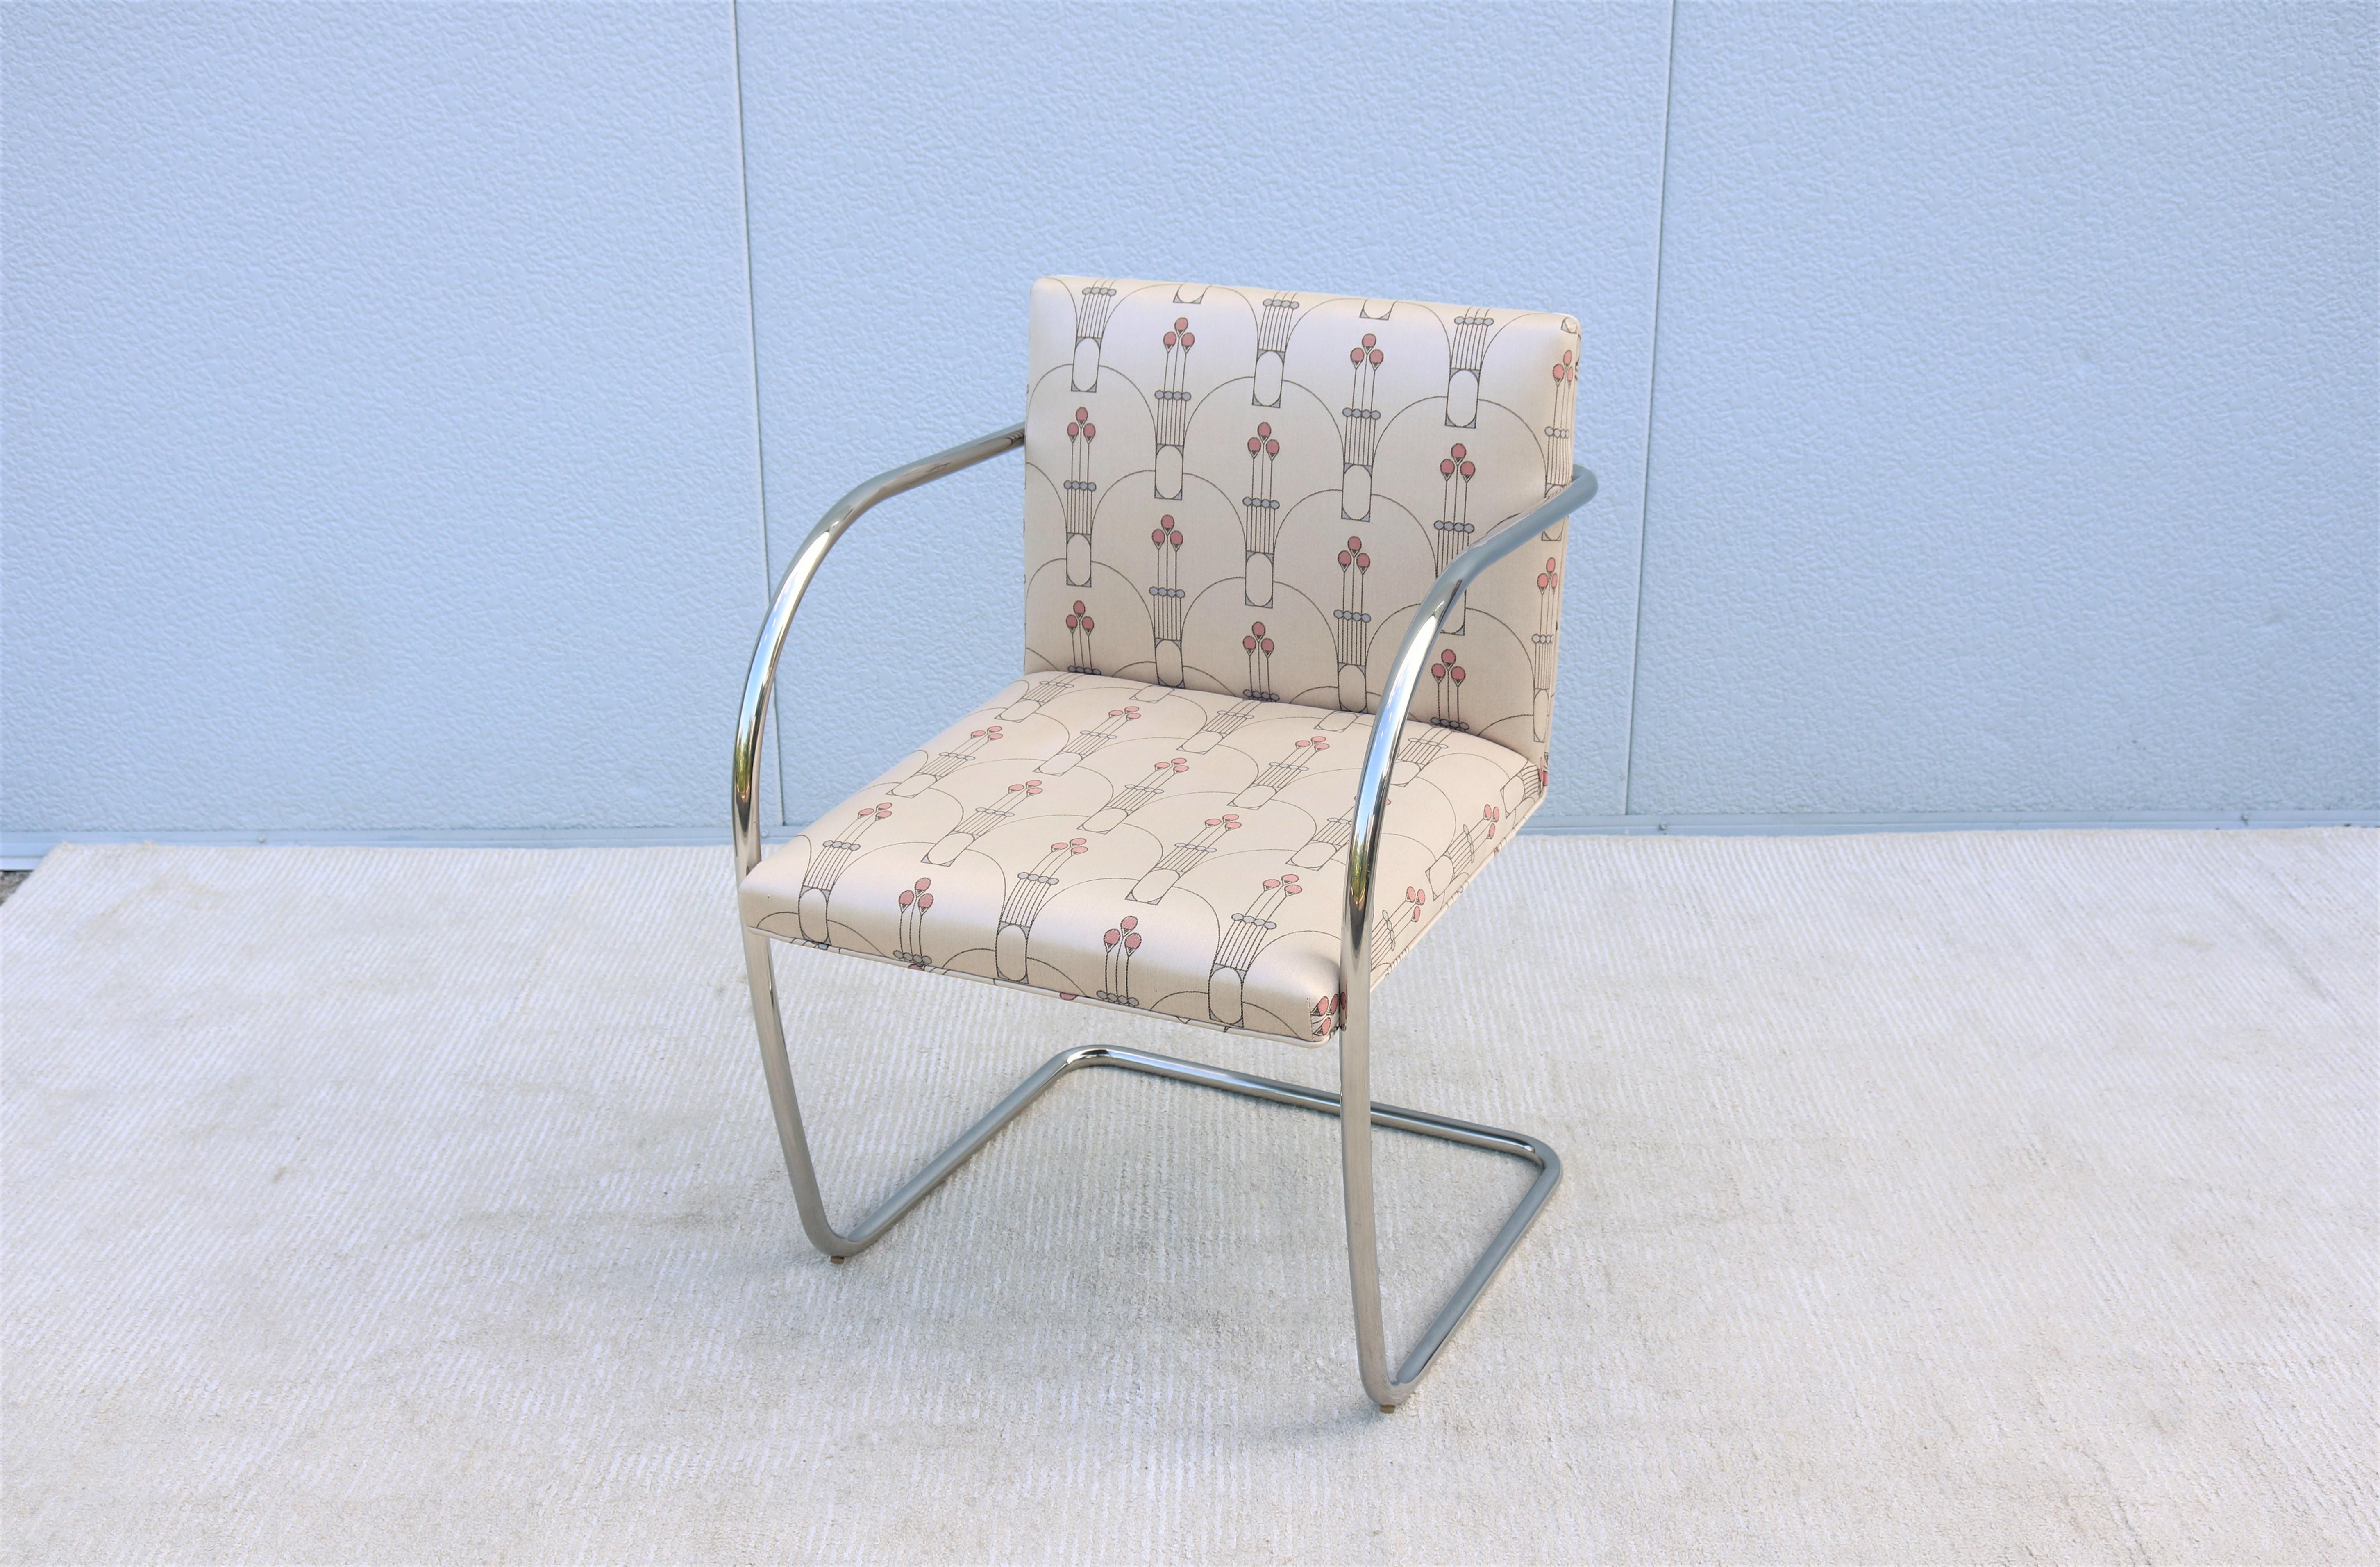 Fabuleuse chaise tubulaire vintage Brno en tissu beige.
Une icône de la modernité du milieu du siècle, conçue à l'origine par Ludwig Mies van der Rohe en 1930 pour la maison Tugendhat à Brno, en Tchécoslovaquie.
L'un des designs les plus populaires